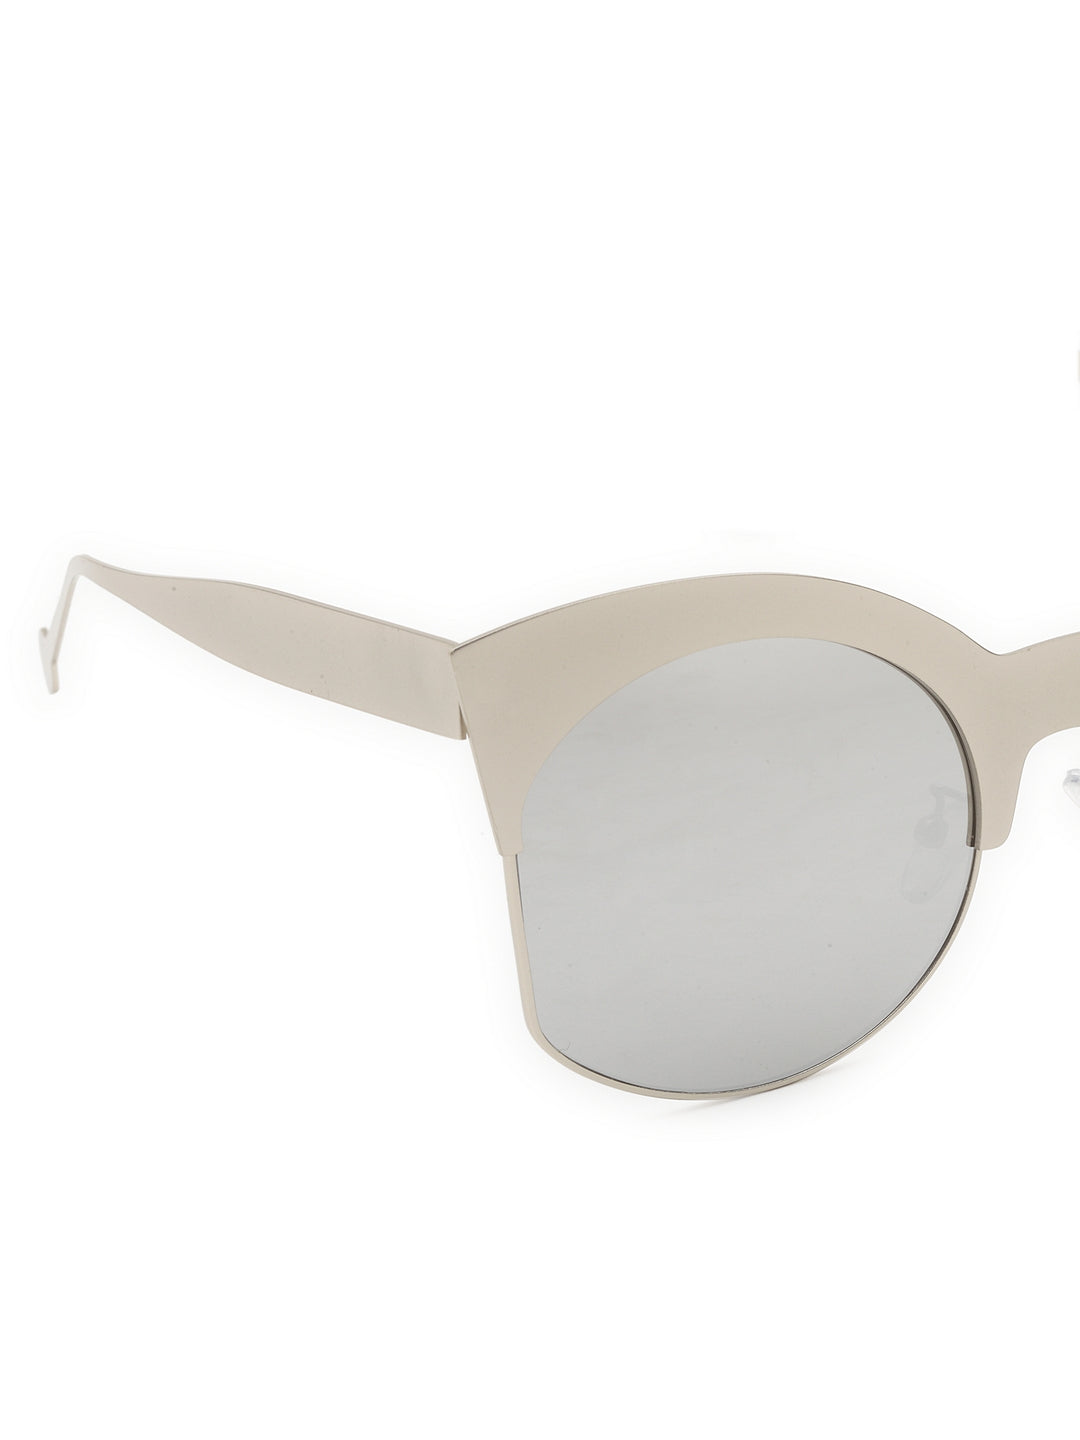 Oversized cateye fashion sunglasses